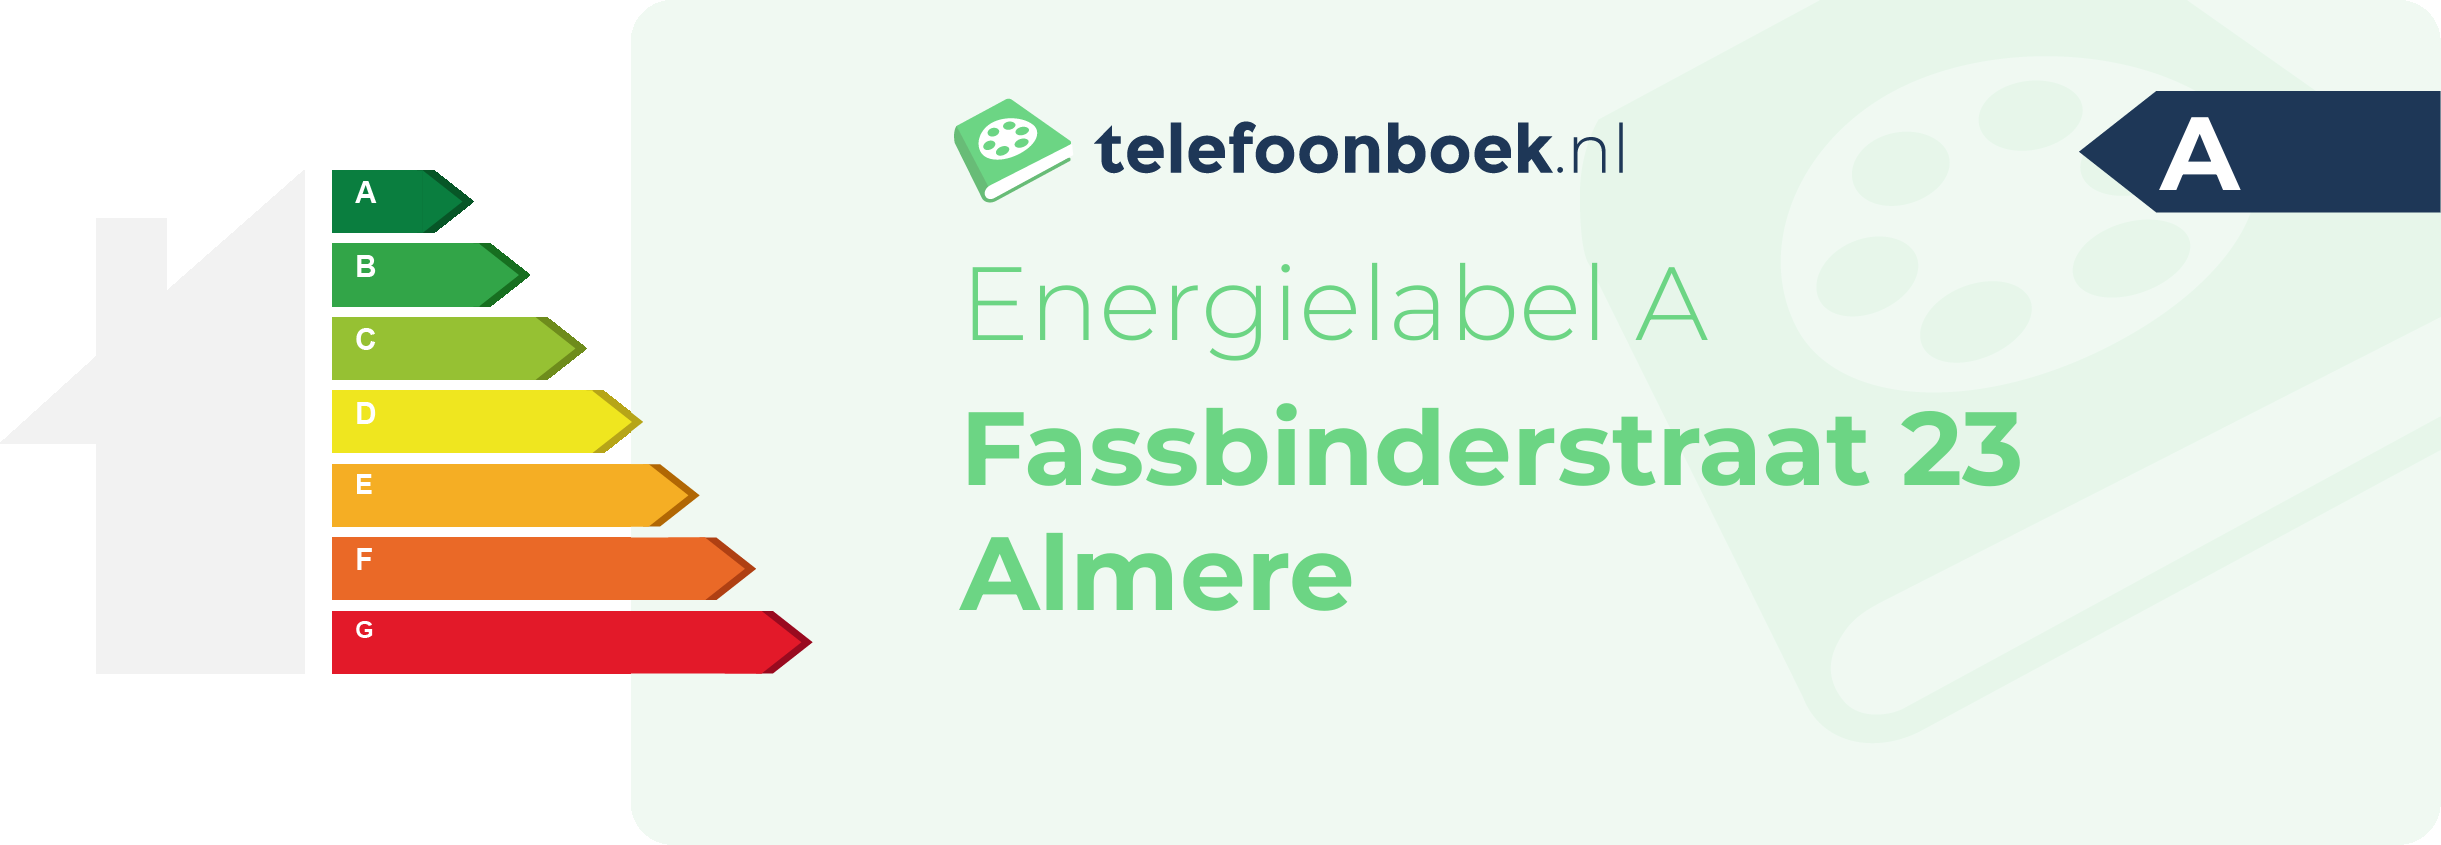 Energielabel Fassbinderstraat 23 Almere